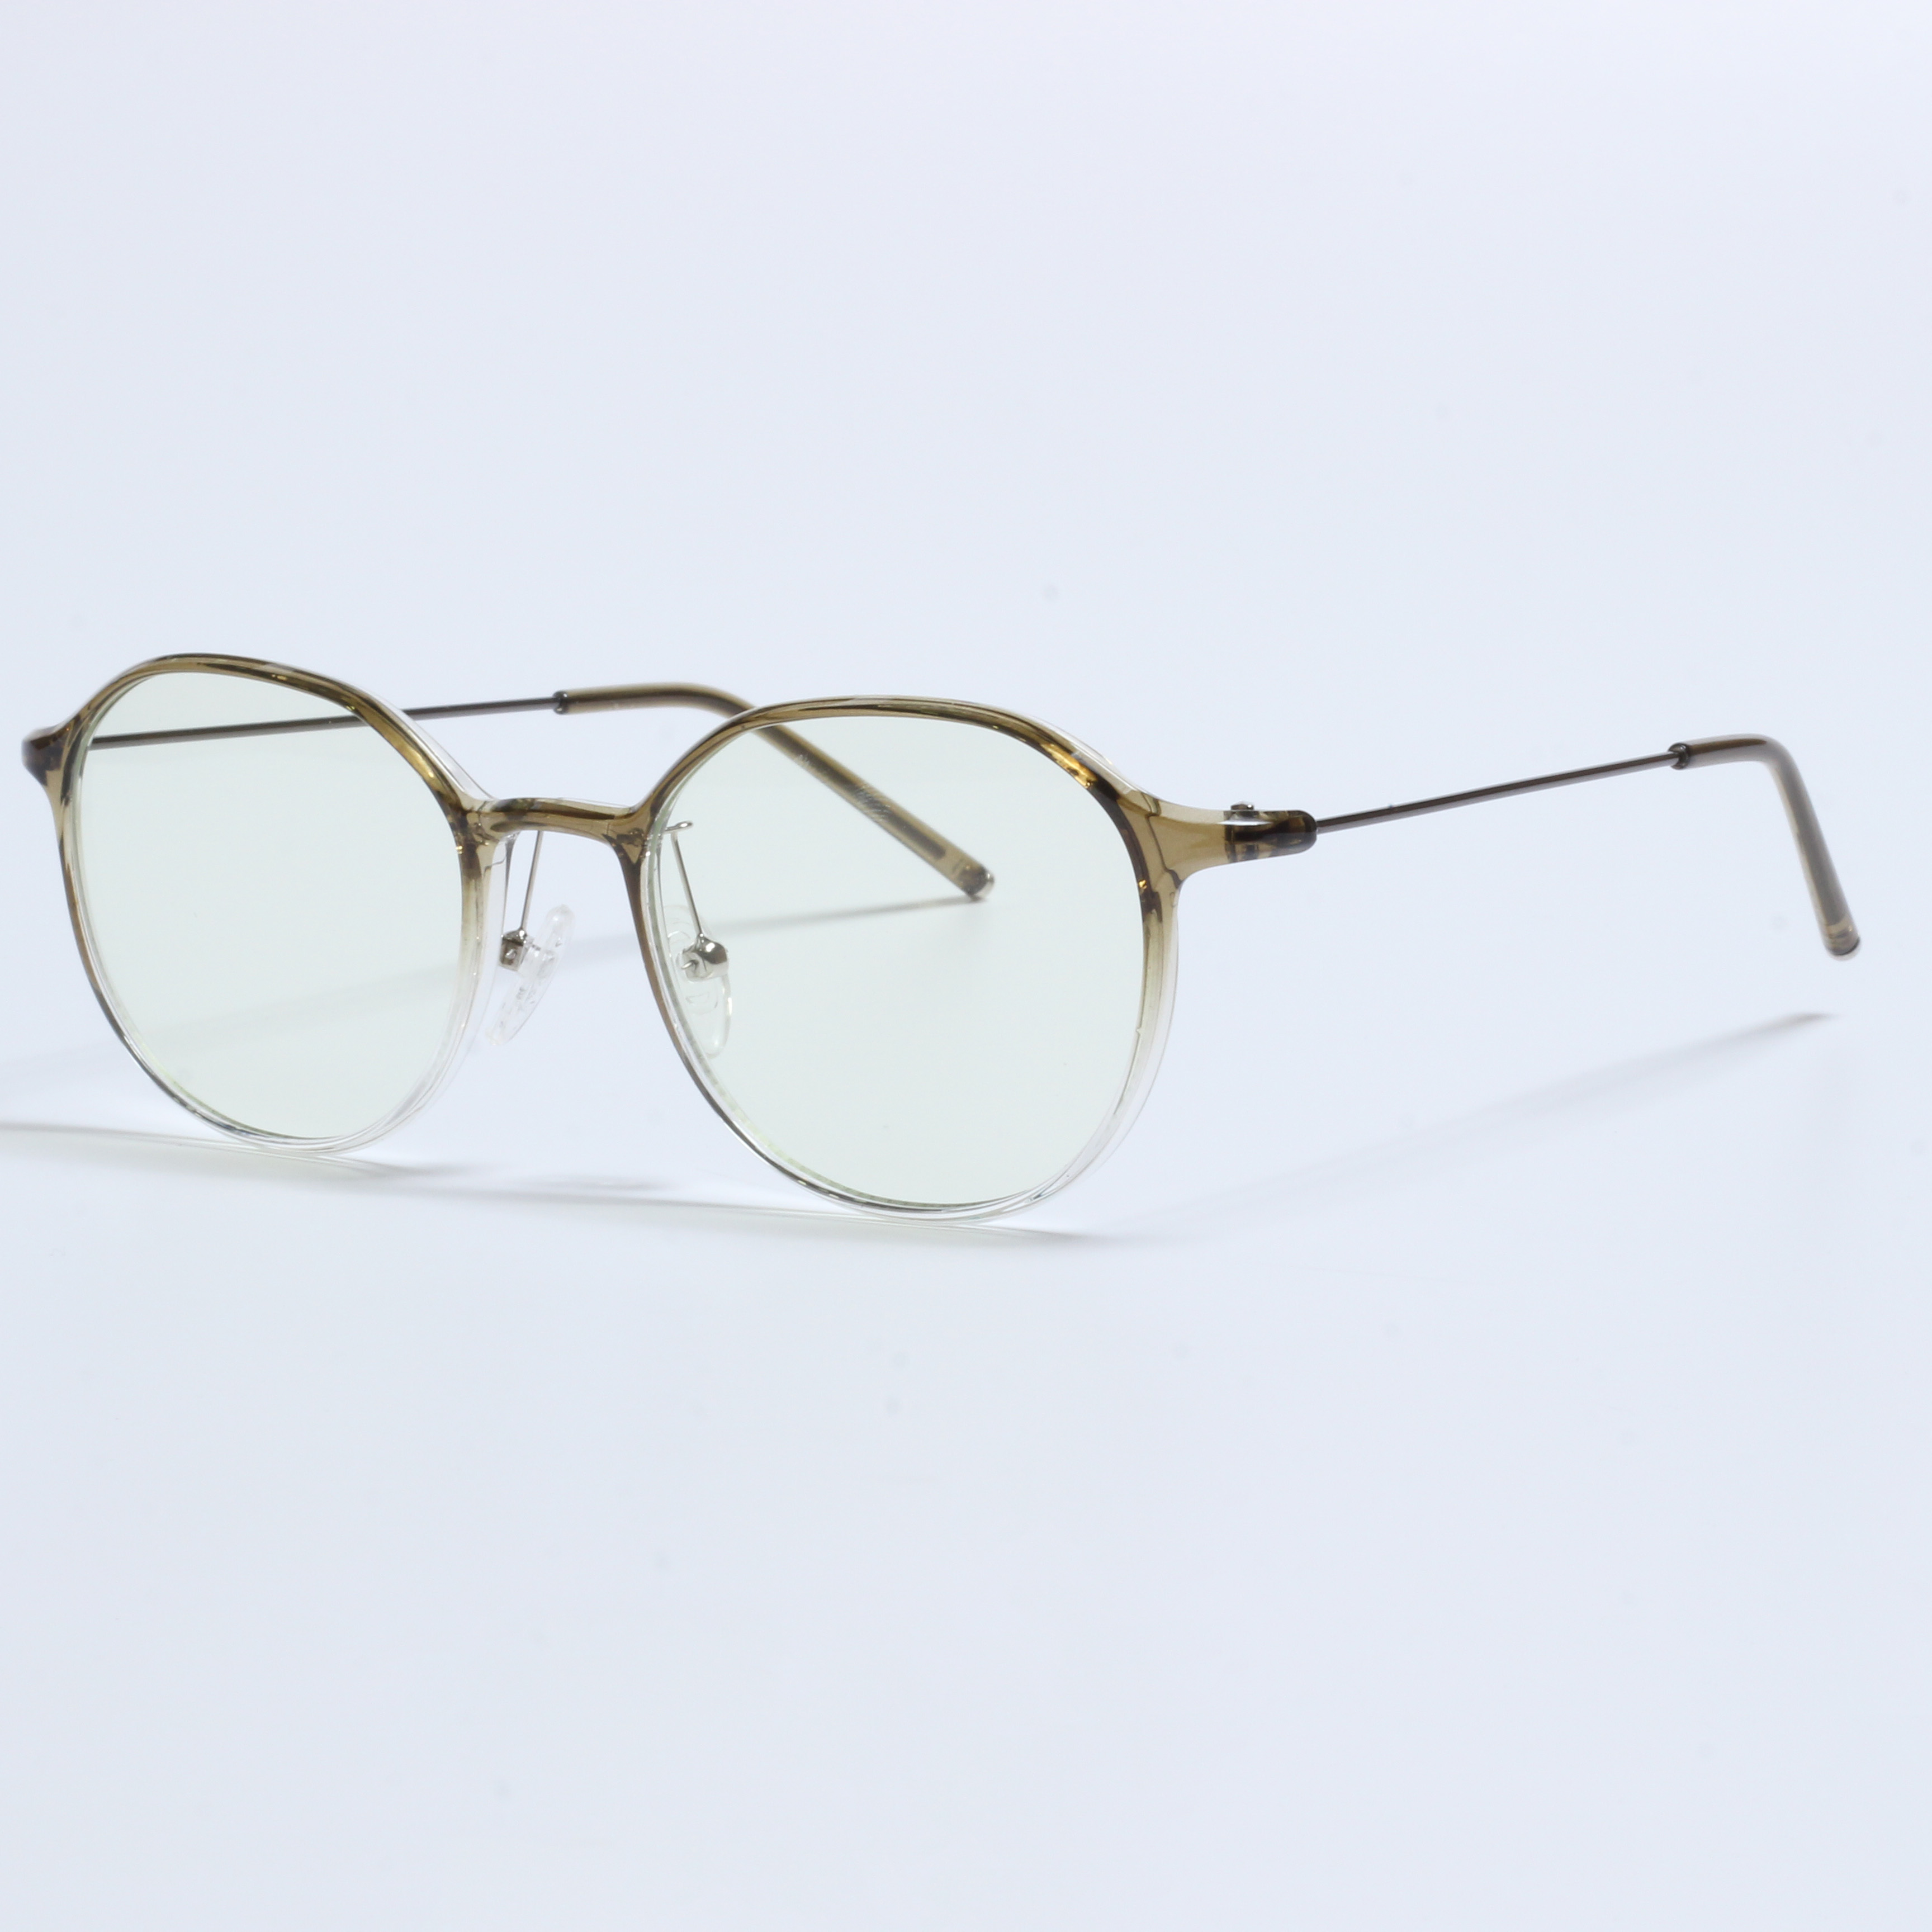 Vintage dik Gafas Opticas De Hombres Deursigtige TR90 Rame (10)